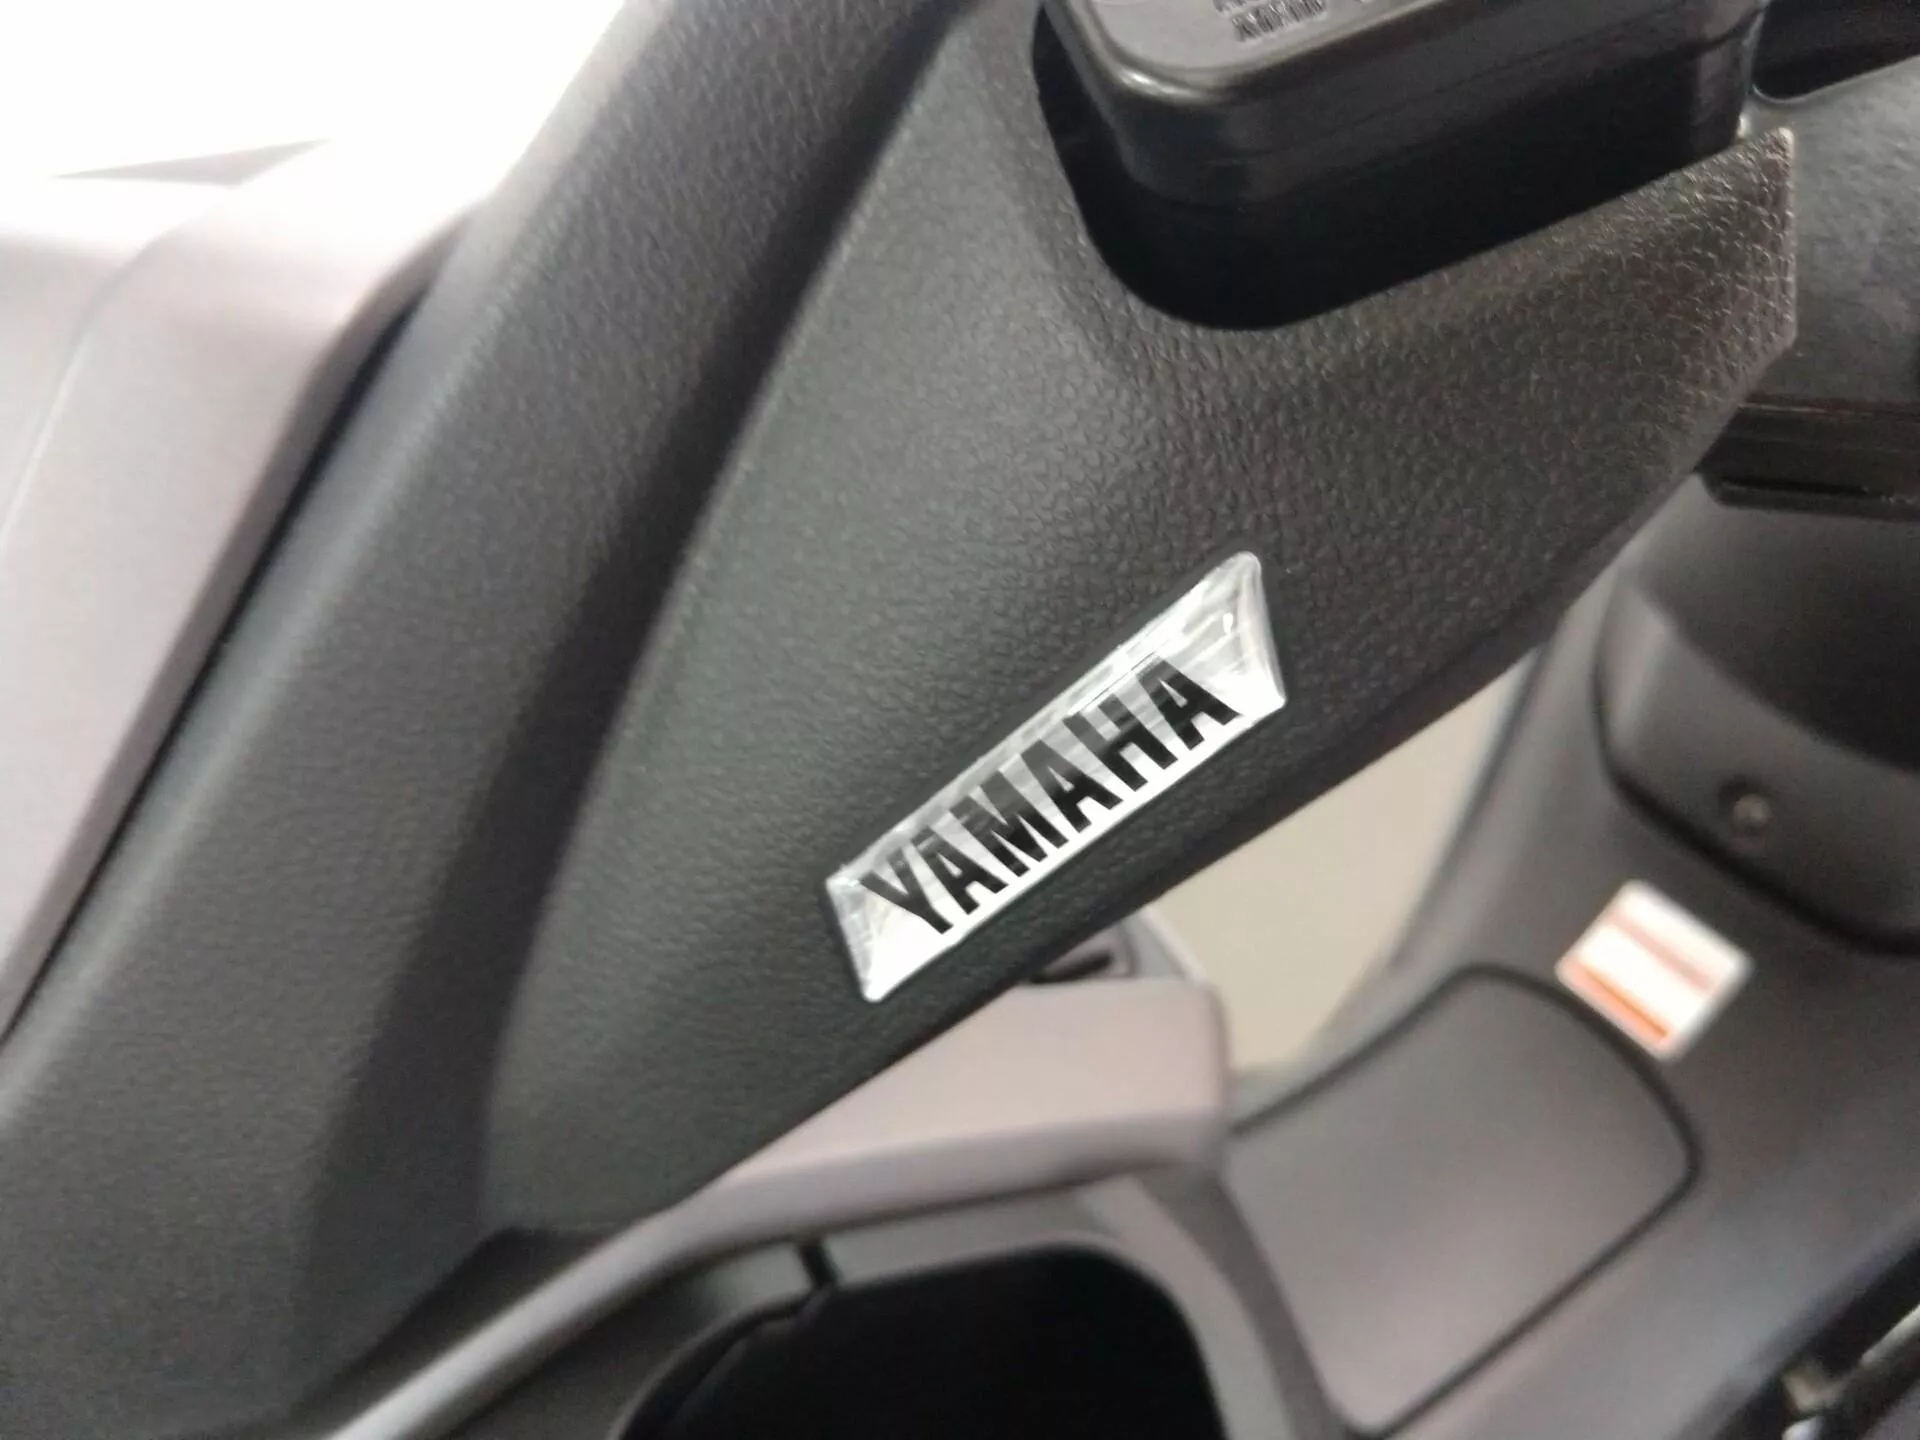 Yamaha Nmax 160 ABS Branco 9